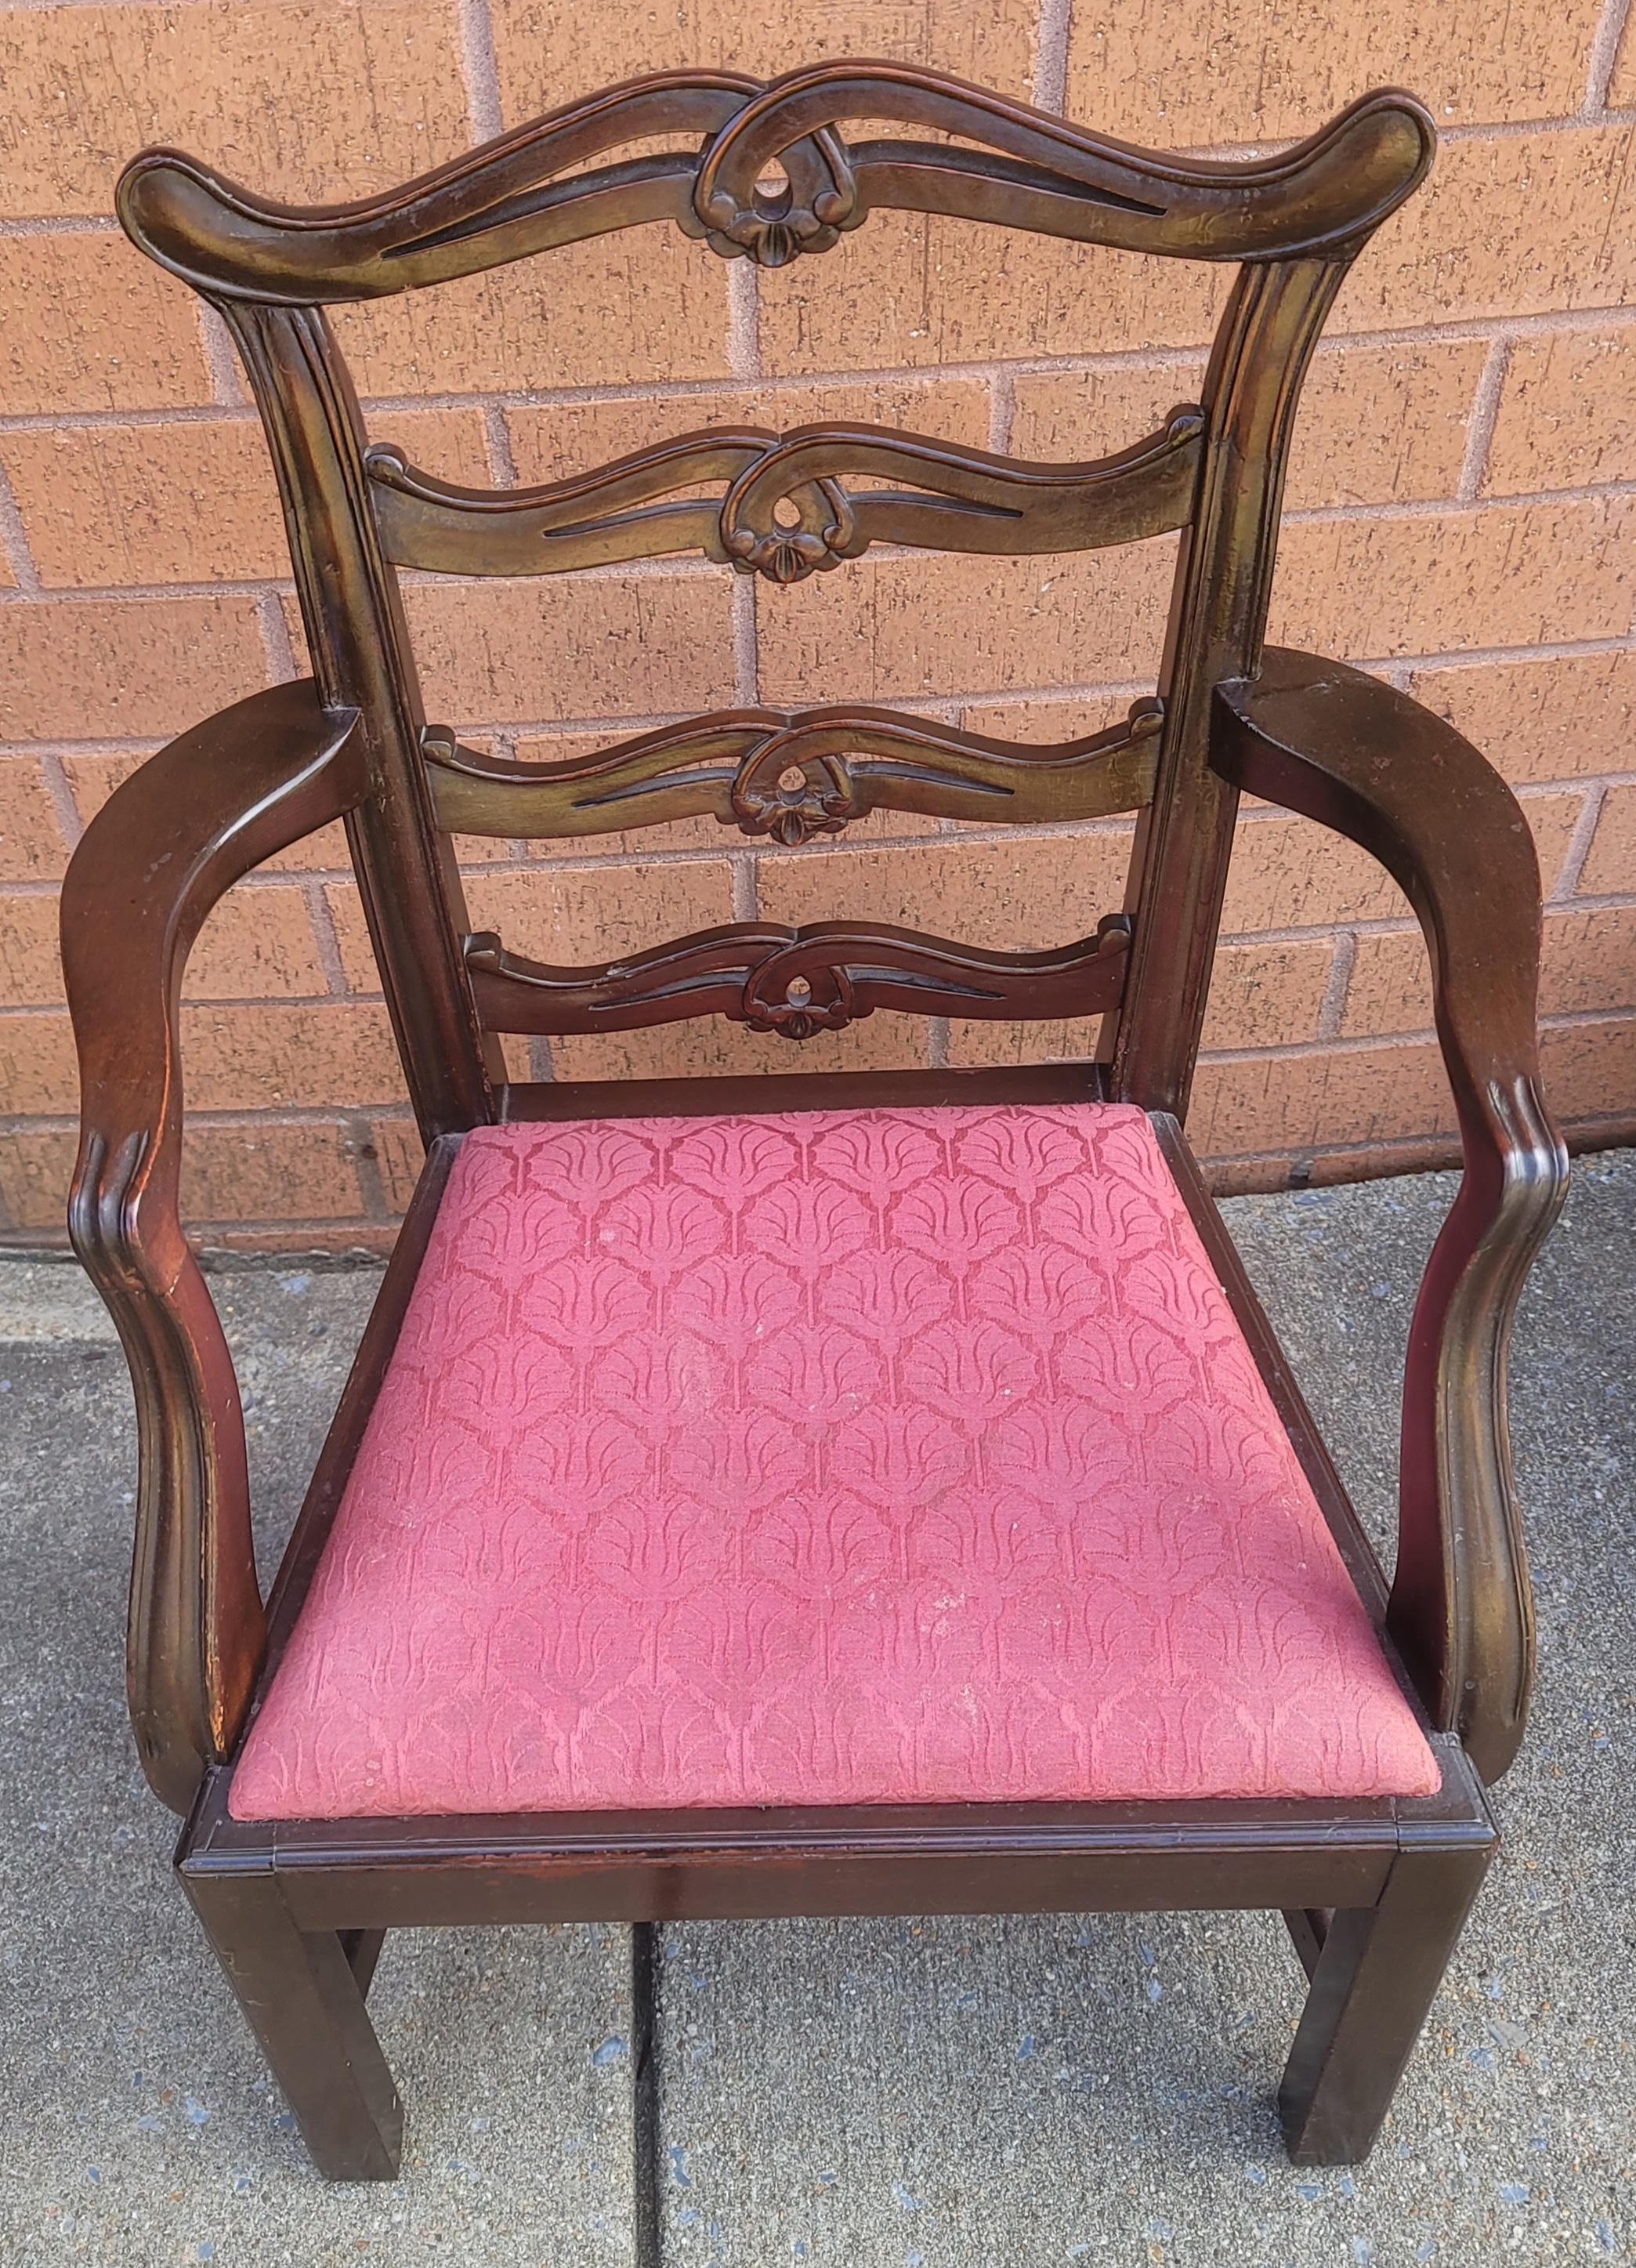 George III Style Pierced Ladder zurück Mahagoni & gepolsterten Sitz Kind Sessel. Sehr solide Konstruktion. Nicht nur für dekorative Zwecke, sondern auch für den Gebrauch.